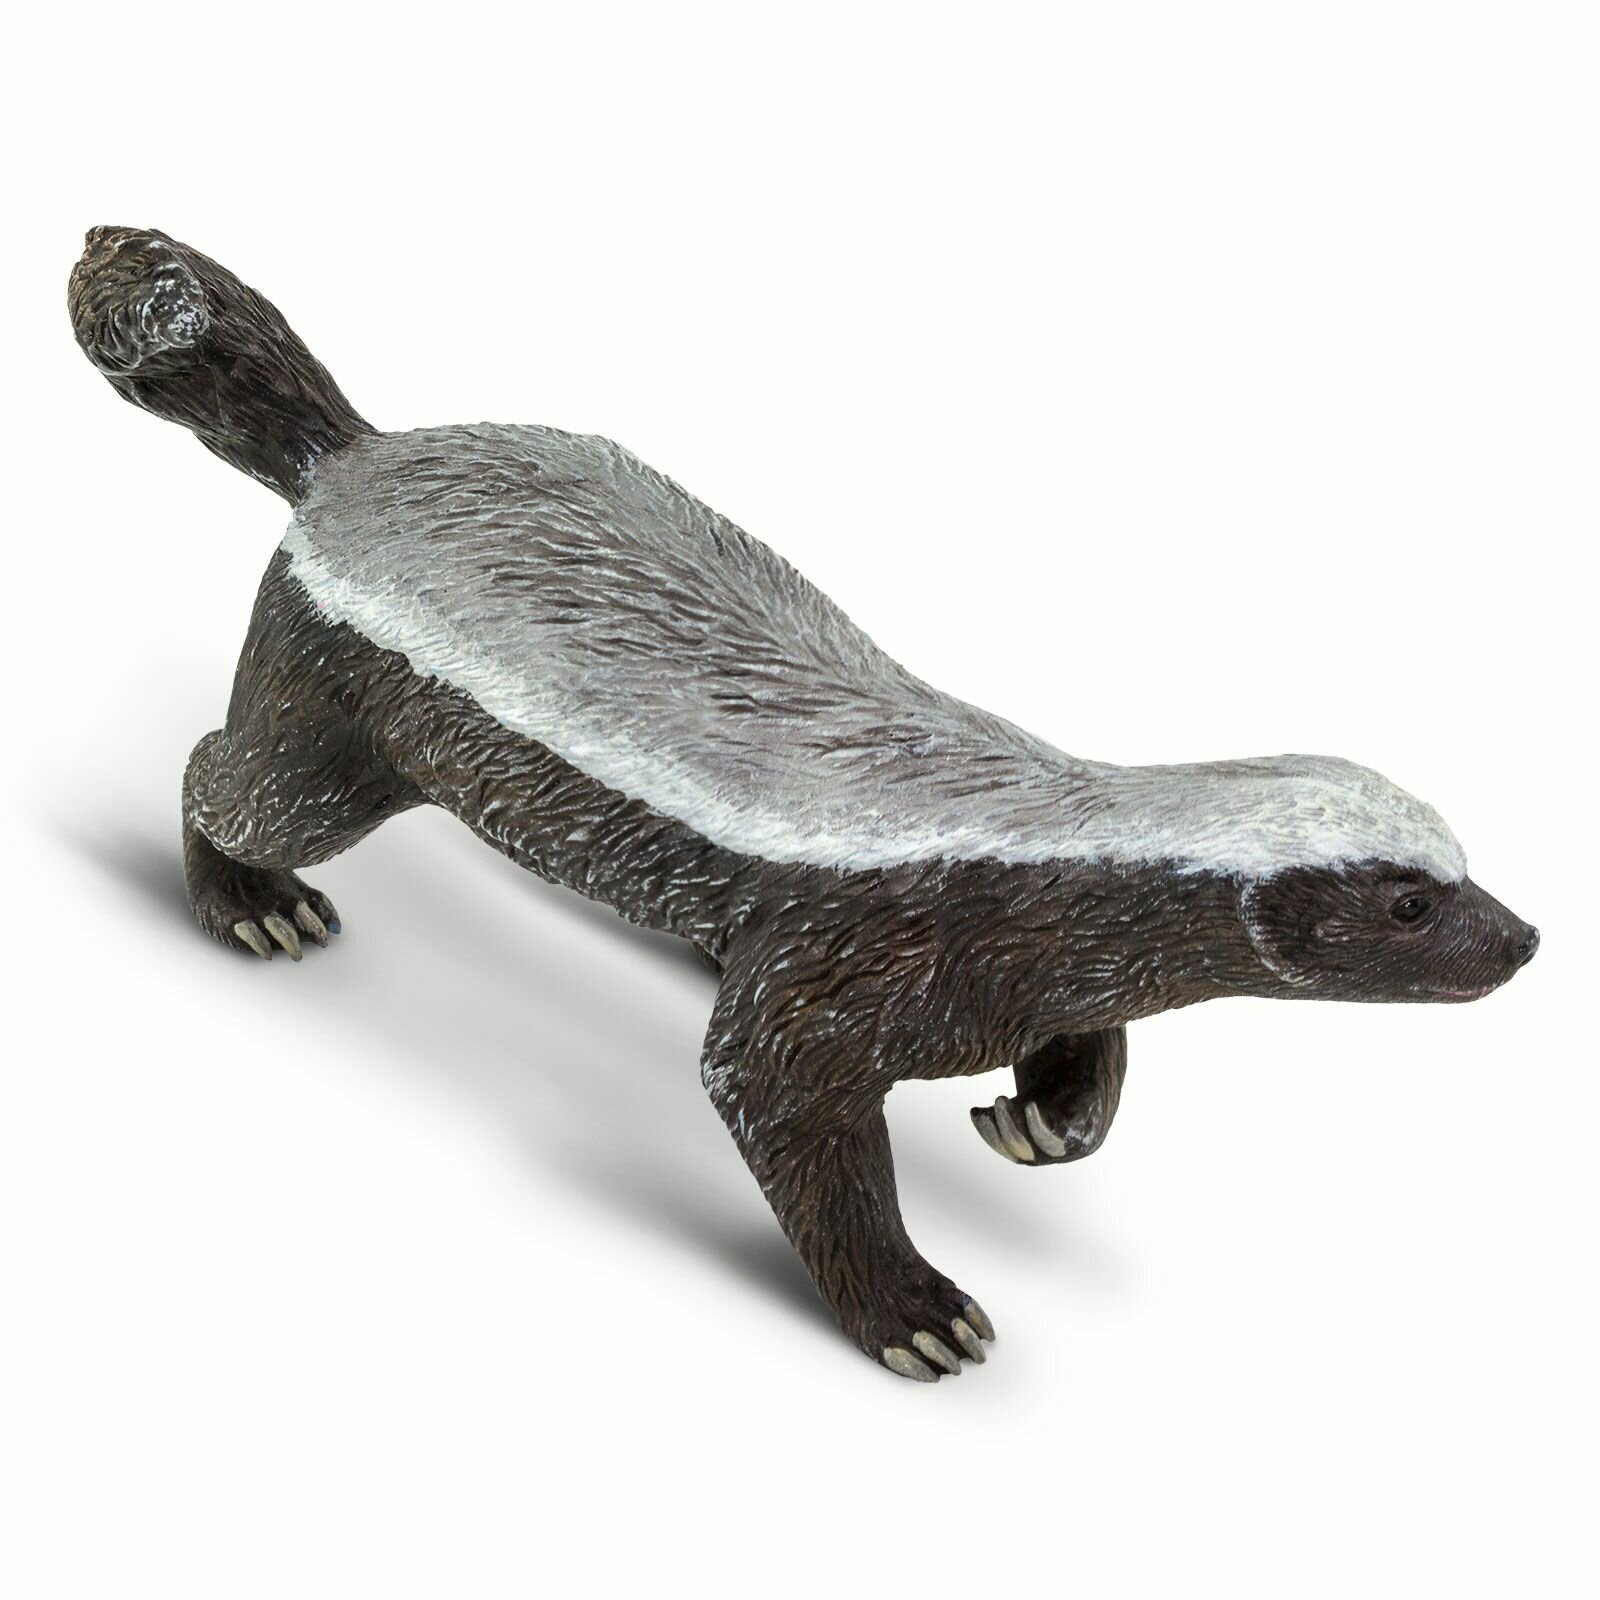 Фигурка животного Safari Ltd Медоед (лысый барсук), для детей, игрушка коллекционная, 100272